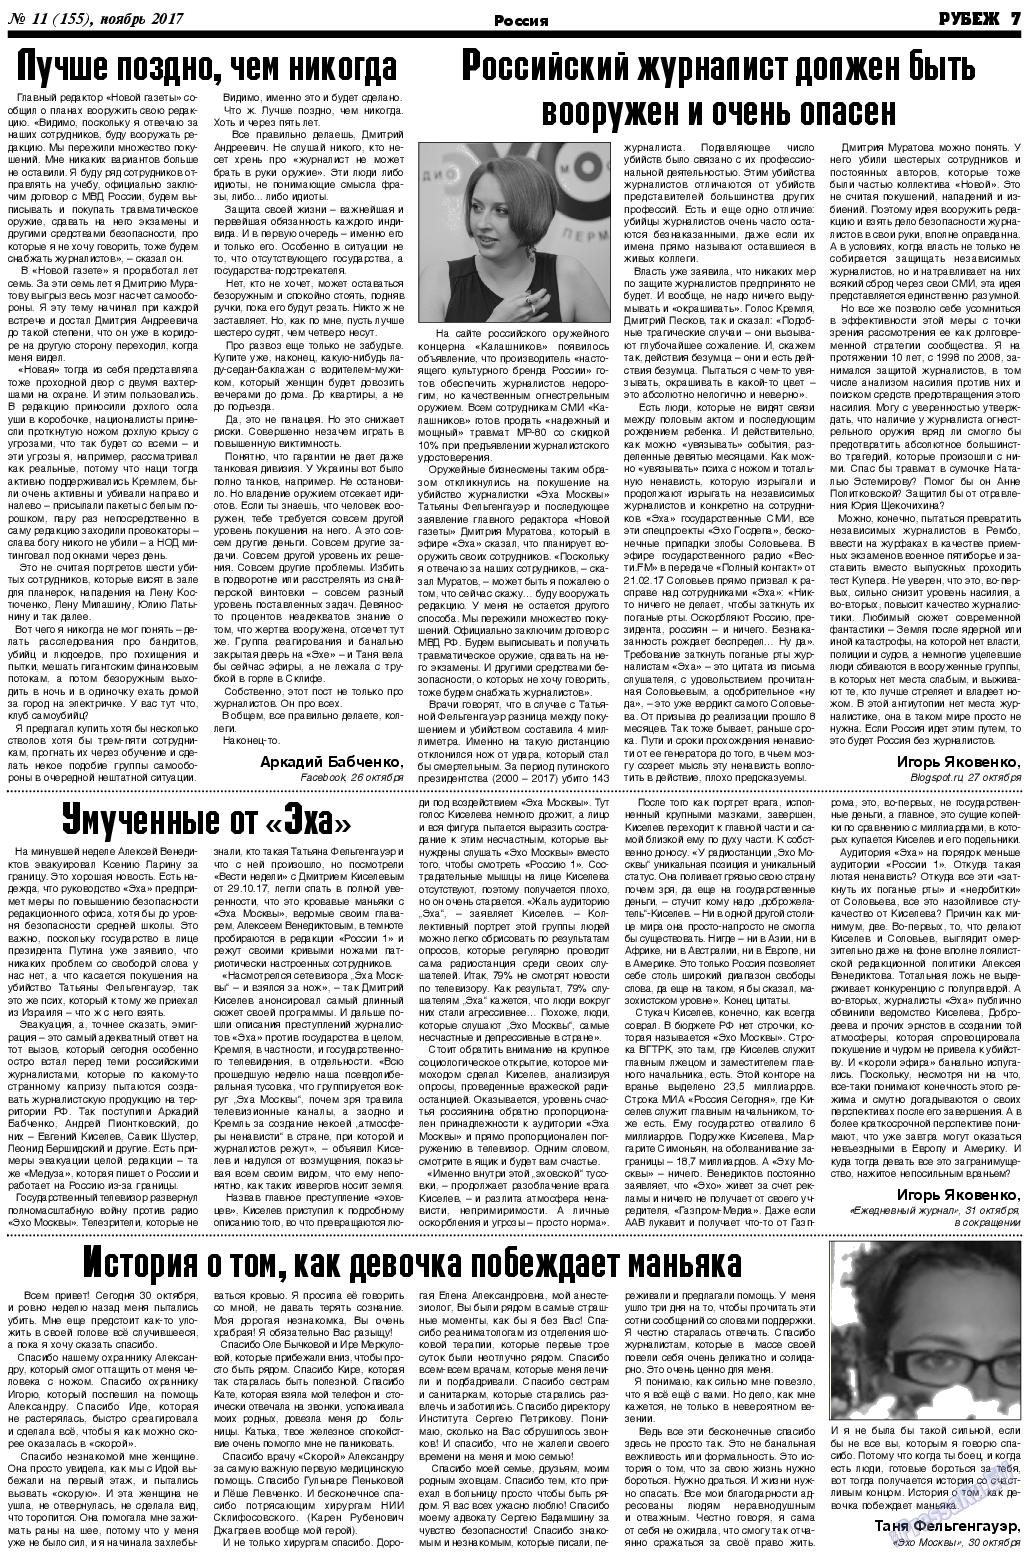 Рубеж (газета). 2017 год, номер 11, стр. 7